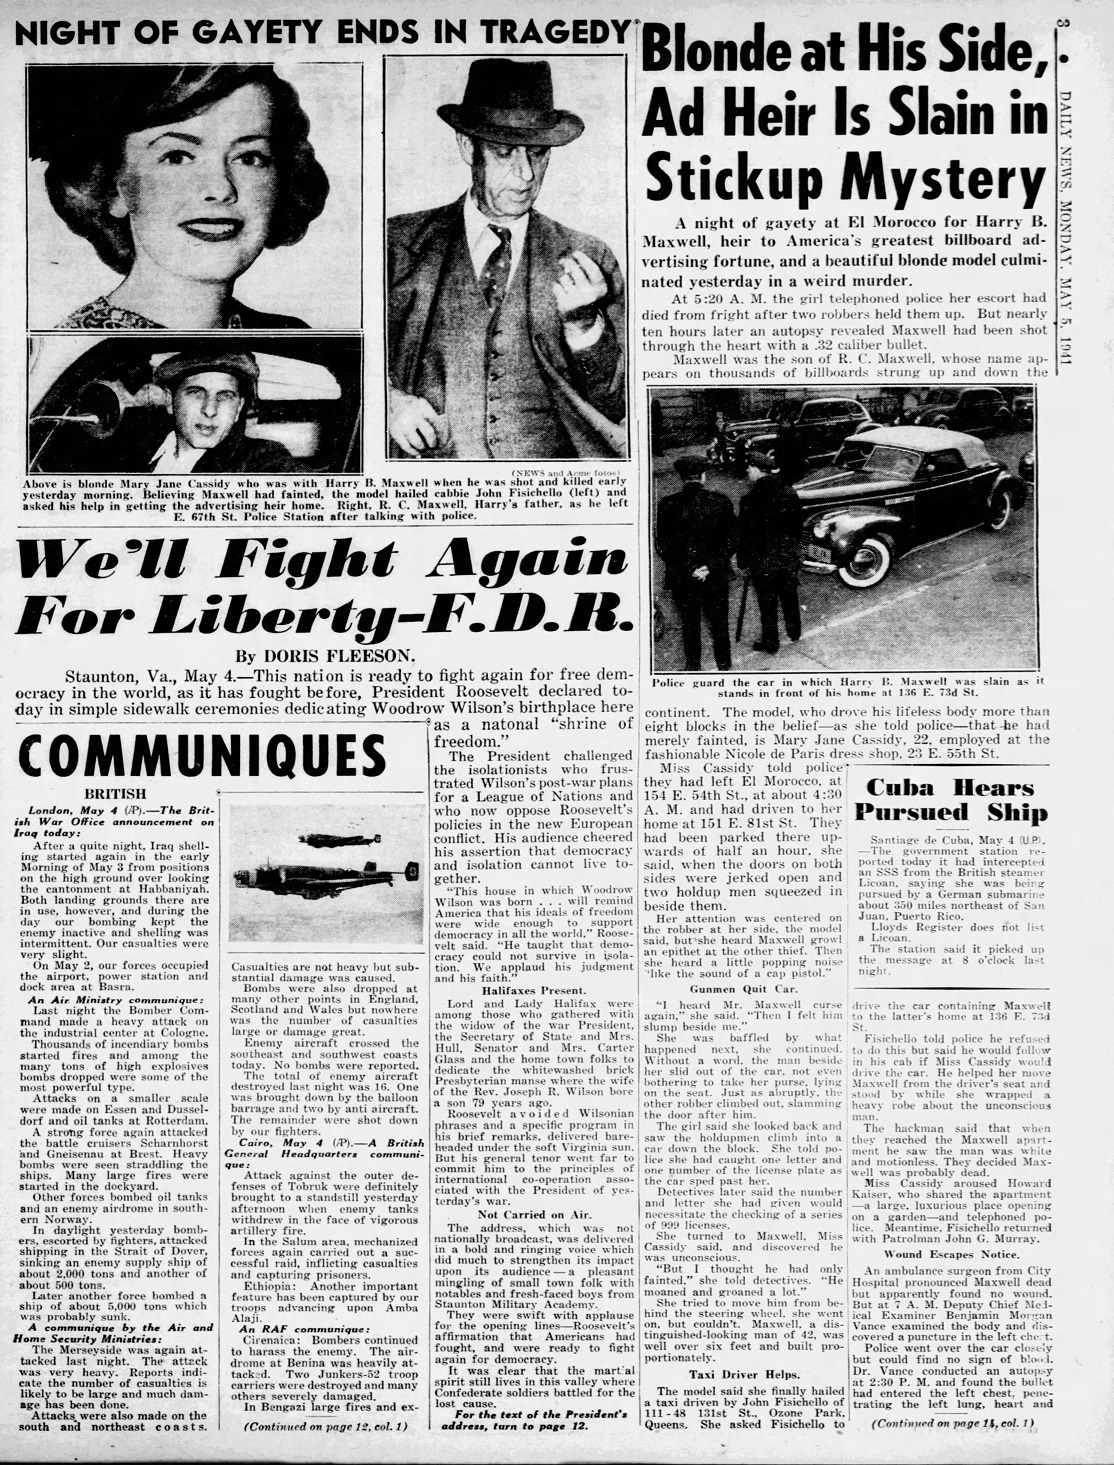 Daily_News_Mon__May_5__1941_(2).jpg